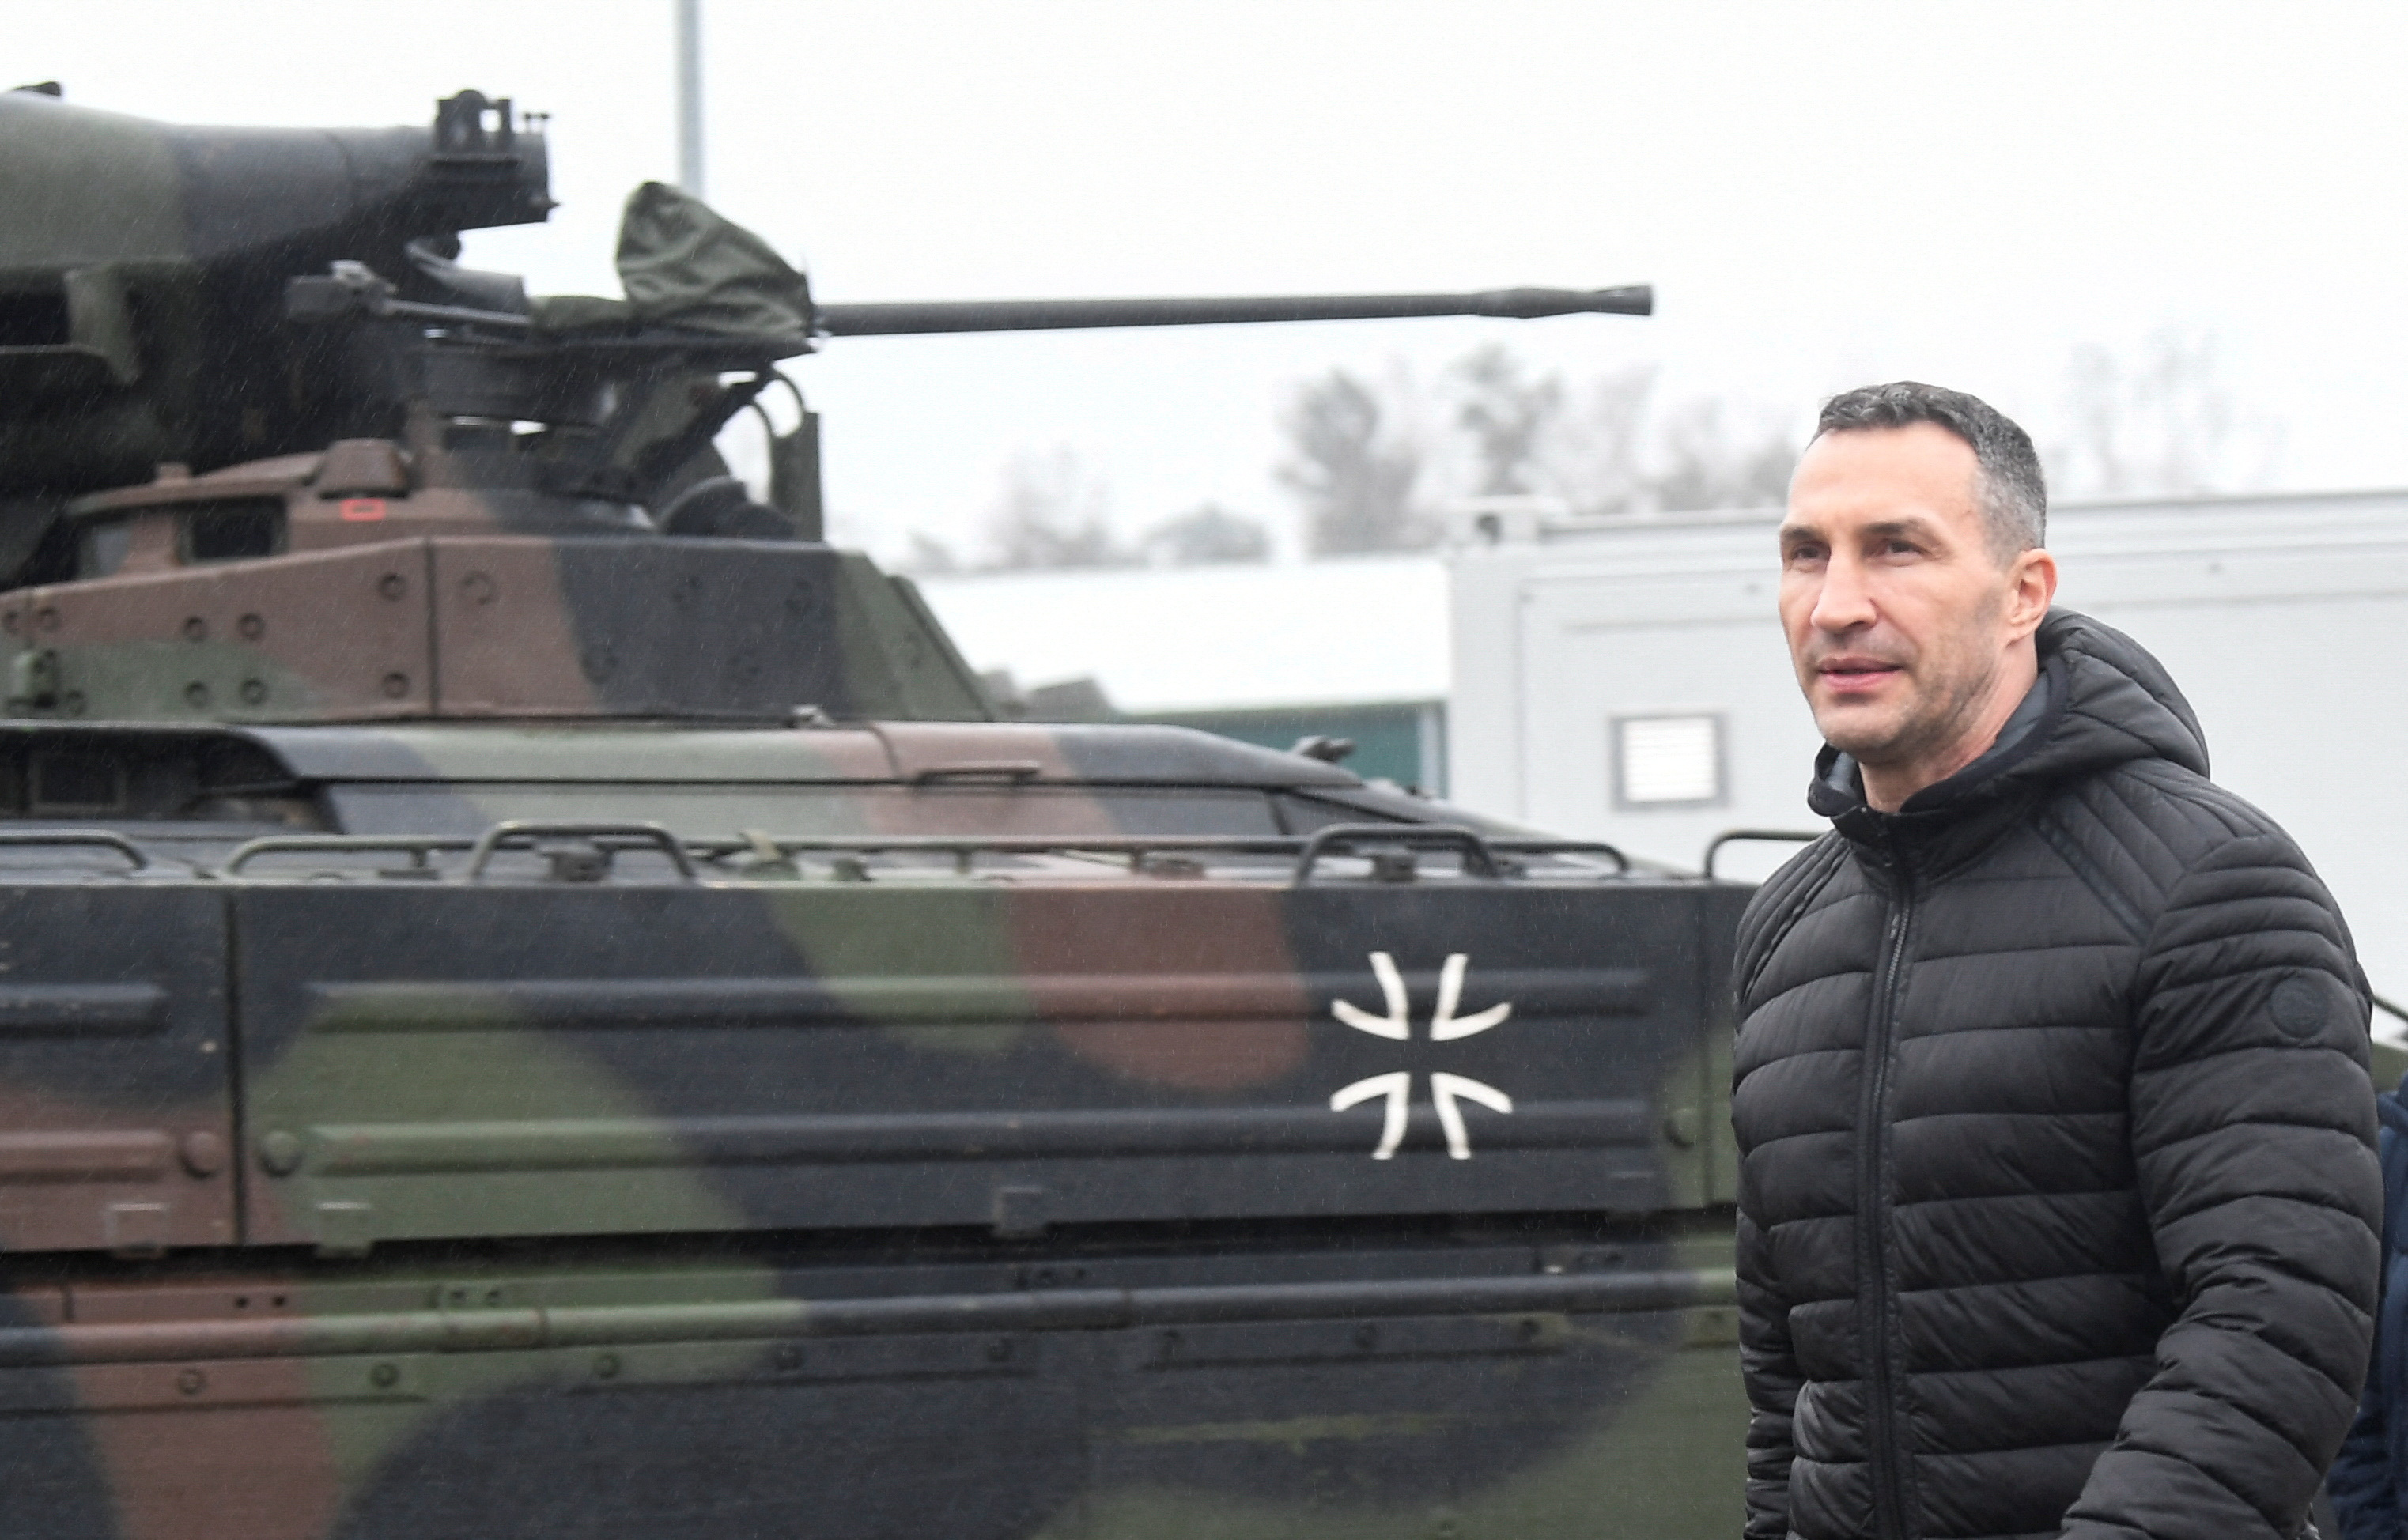 El ex boxeador profesional Vitali Klitschko visita un lugar donde los soldados ucranianos están siendo entrenados en tanques Leopard, en la base Bundeswehr del ejército alemán en Munster, Alemania, el 20 de febrero de 2023 (REUTERS/Fabian Bimmer)